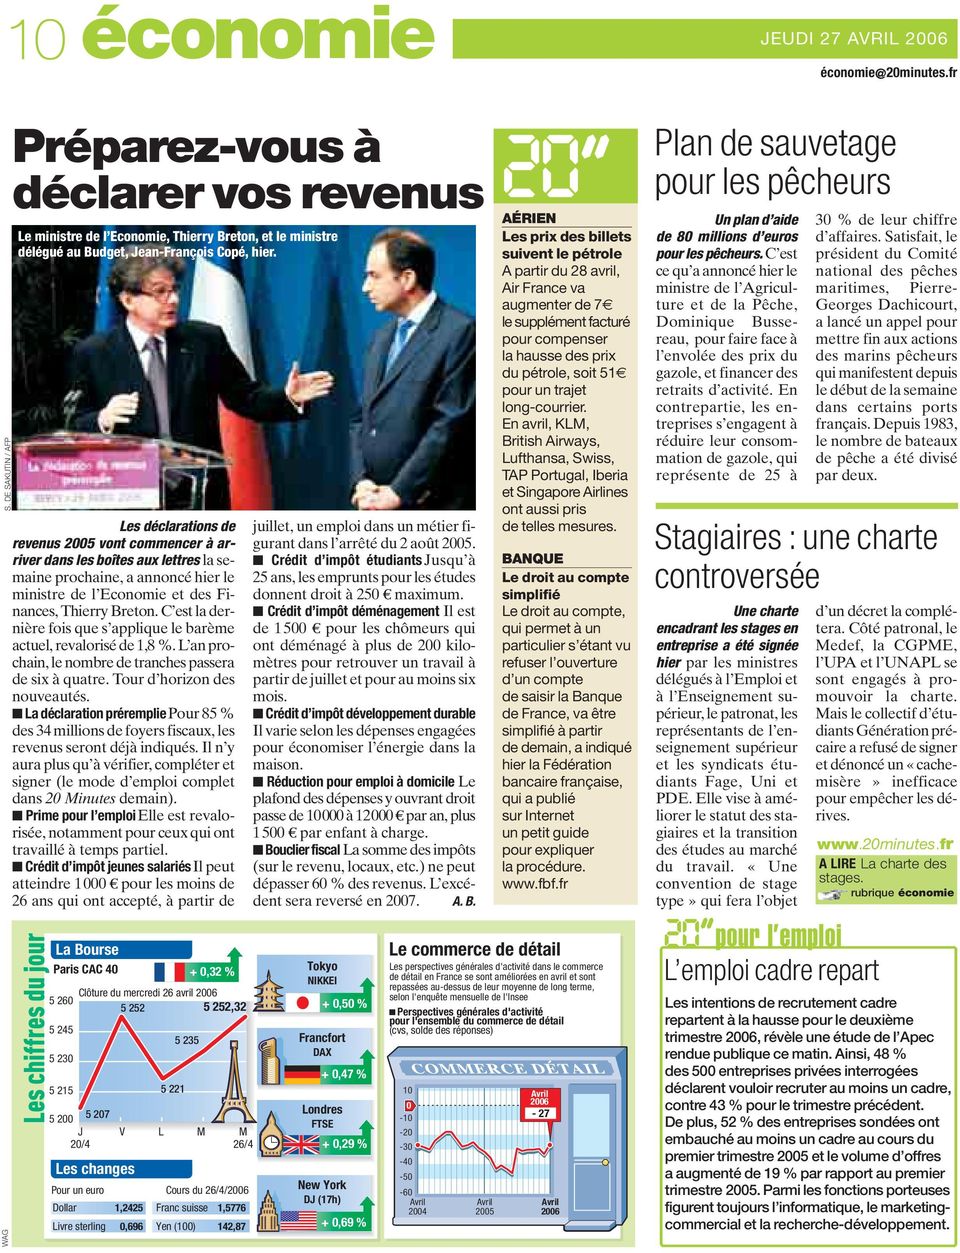 Les déclarations de revenus 2005 vont commencer à arriver dans les boîtes aux lettres la semaine prochaine, a annoncé hier le ministre de l Economie et des Finances, Thierry Breton.